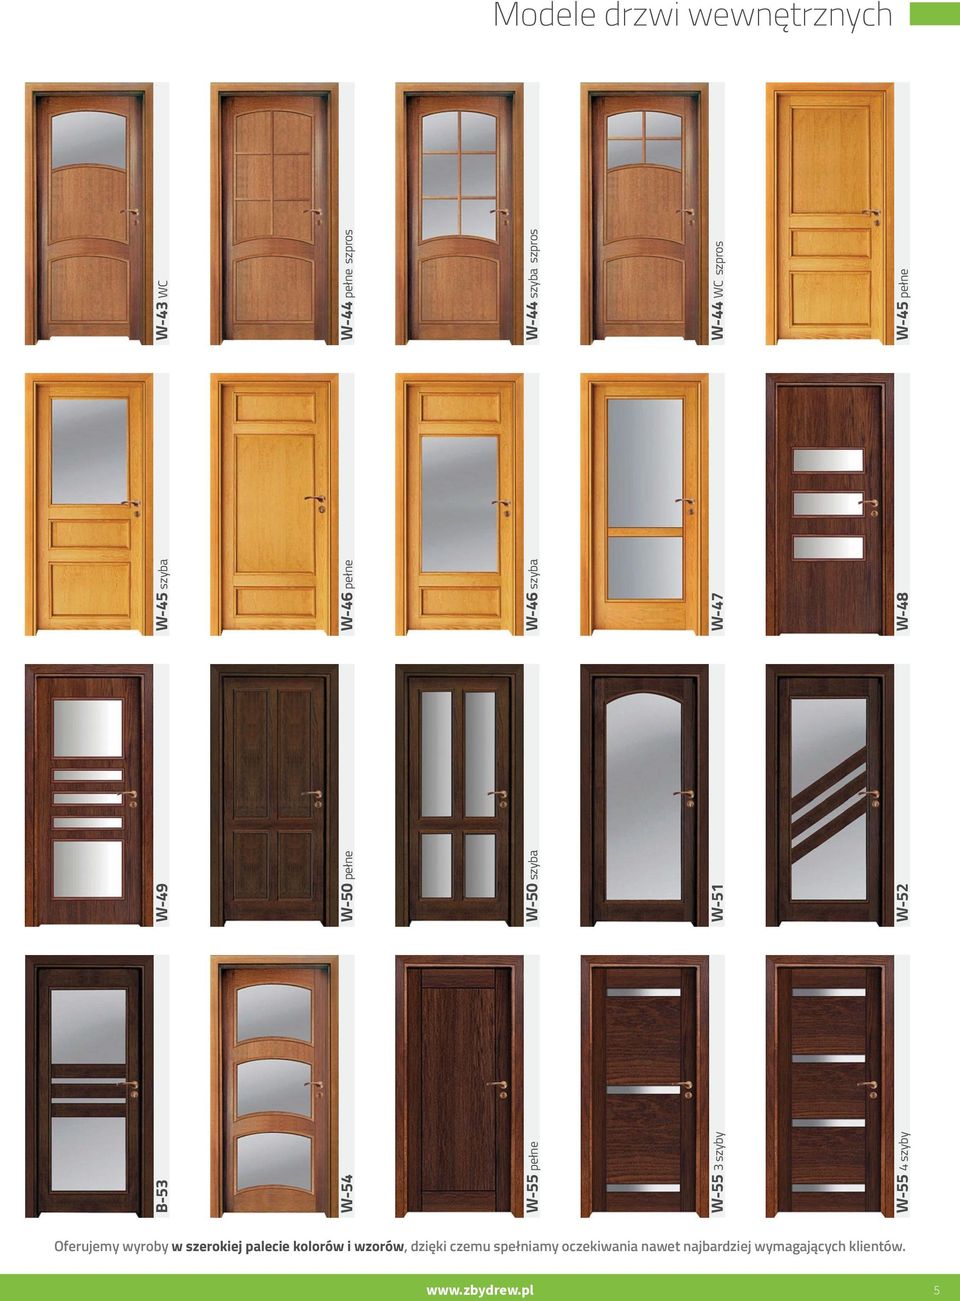 Drzwi wewnętrzne. drewniane - na każdy wymiar. Katalog ofertowy - PDF  Darmowe pobieranie